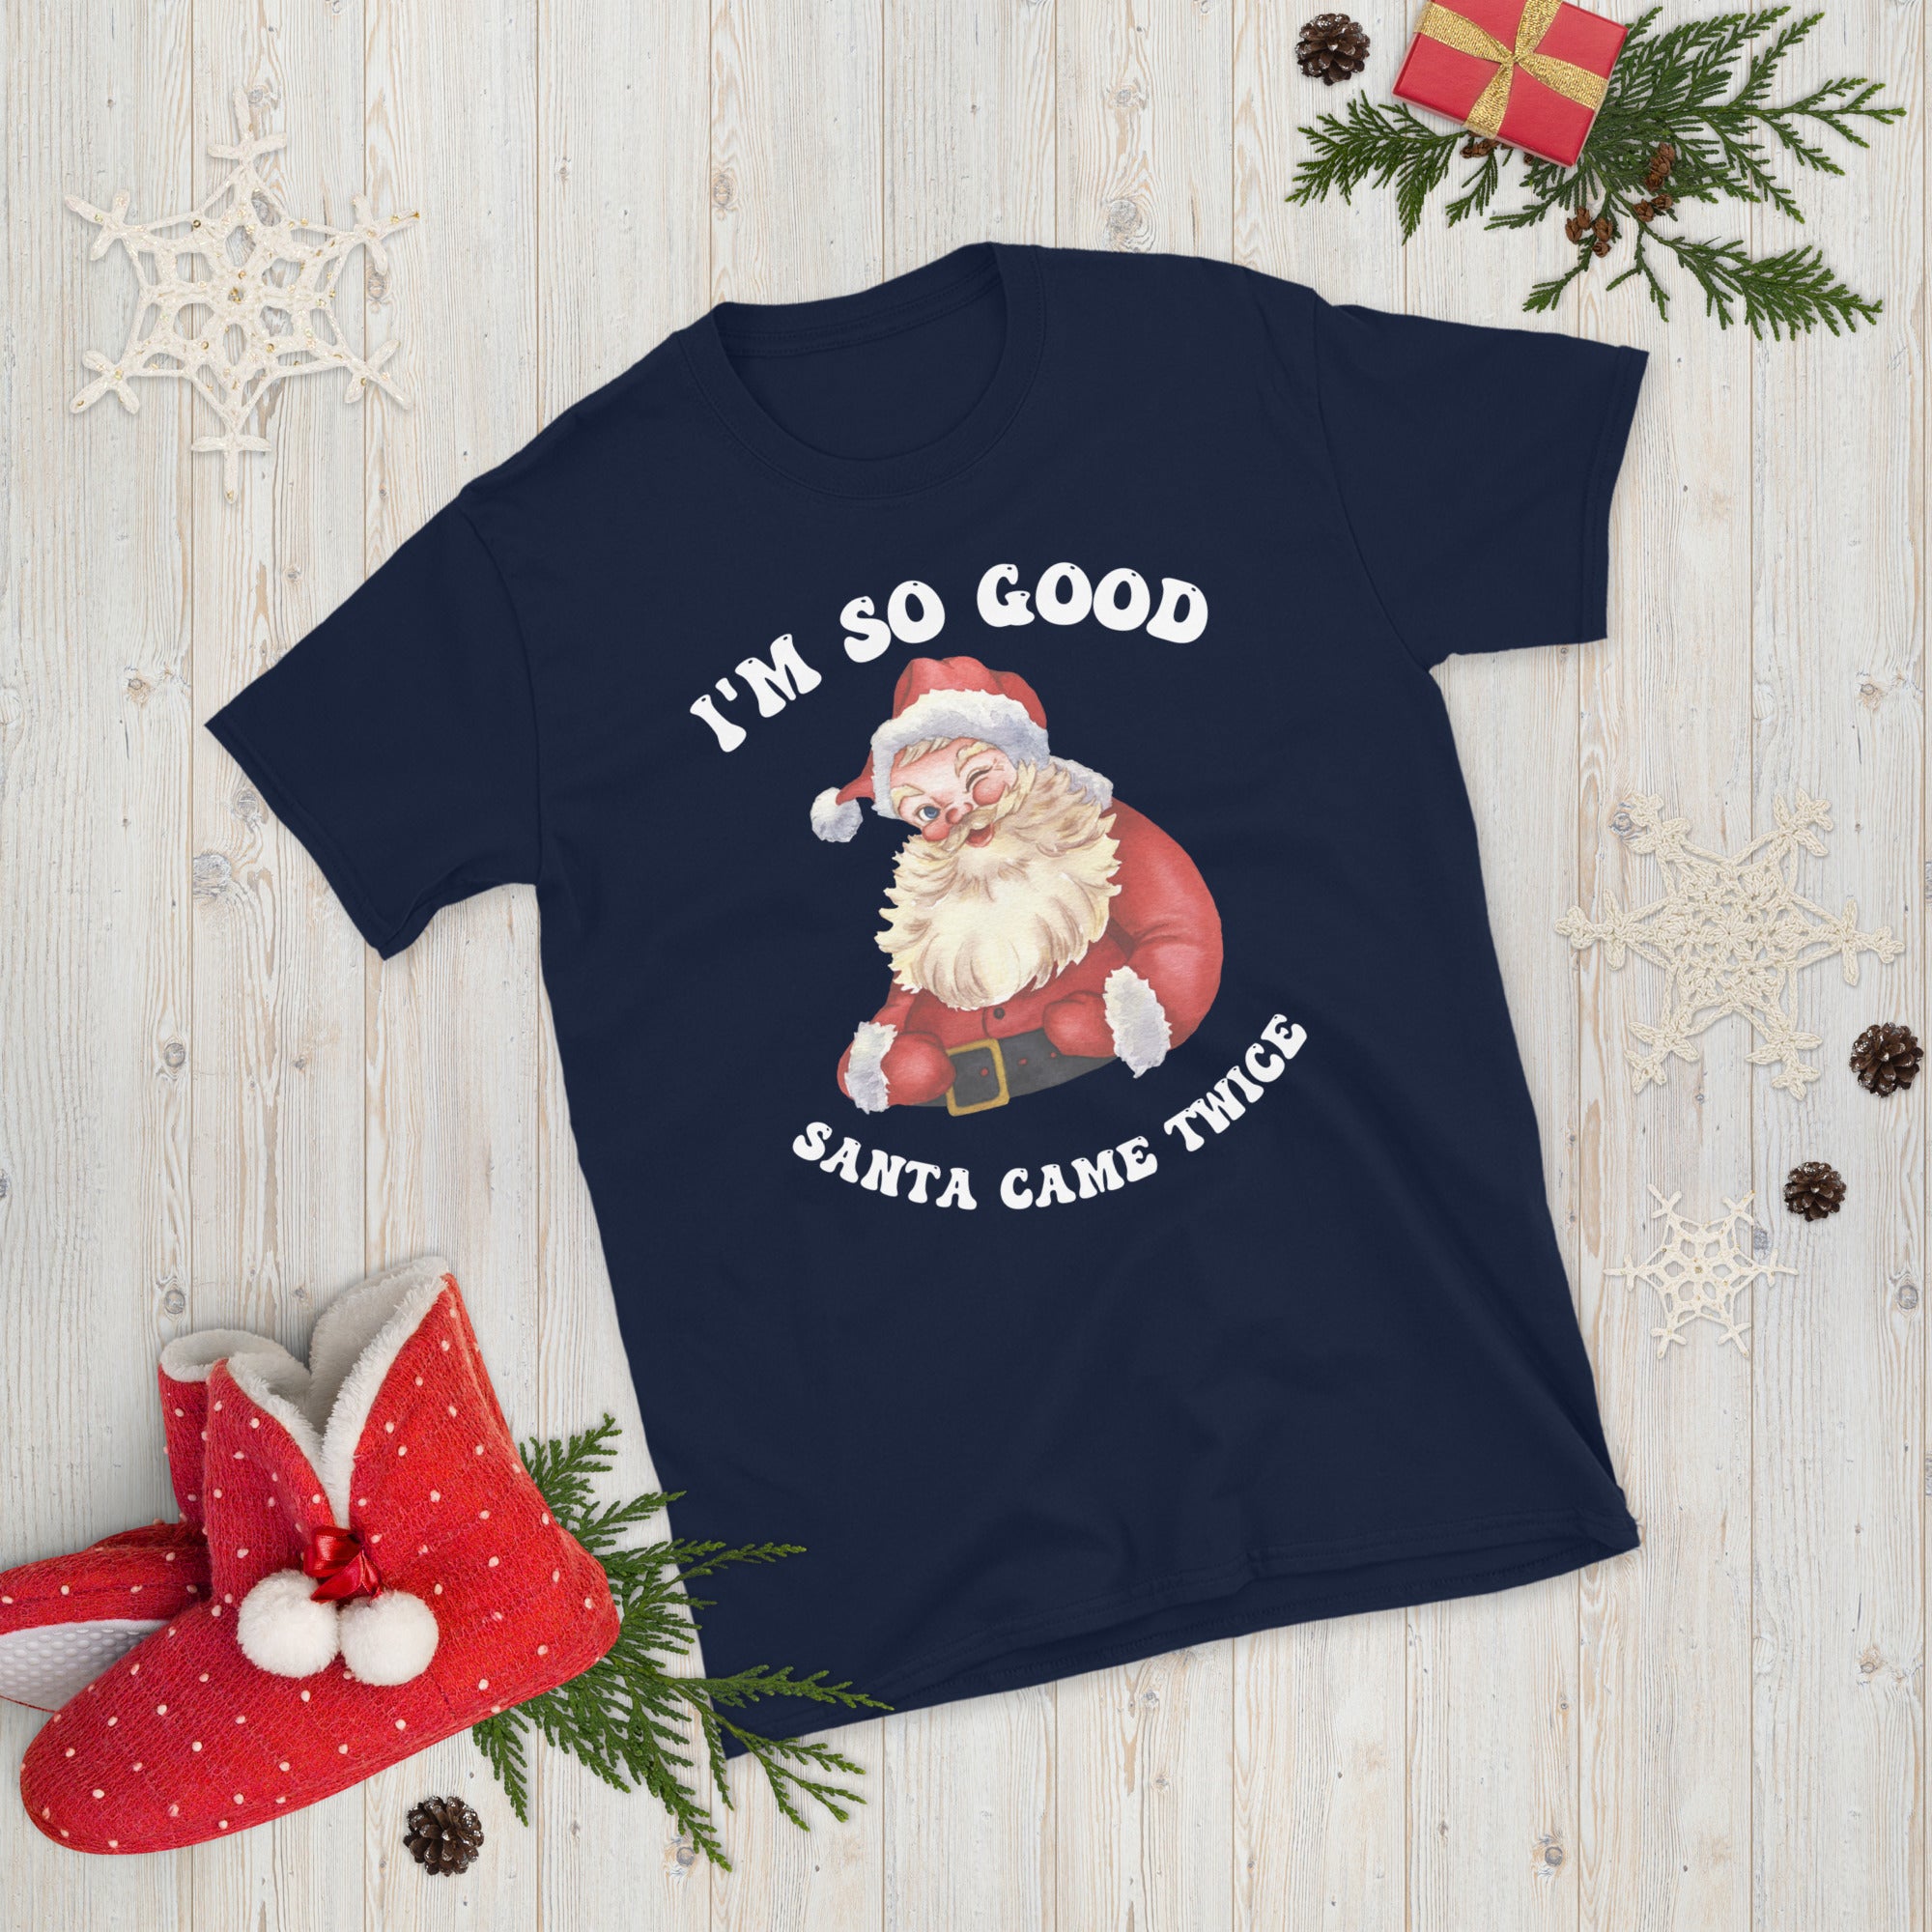 Naughty Couple Christmas Shirts, I&#39;m So Good Santa Came Twice Shirt, Couples Ugly Christmas Tees, Groovy Christmas Gifts, Xmas Adult Humour - Madeinsea©